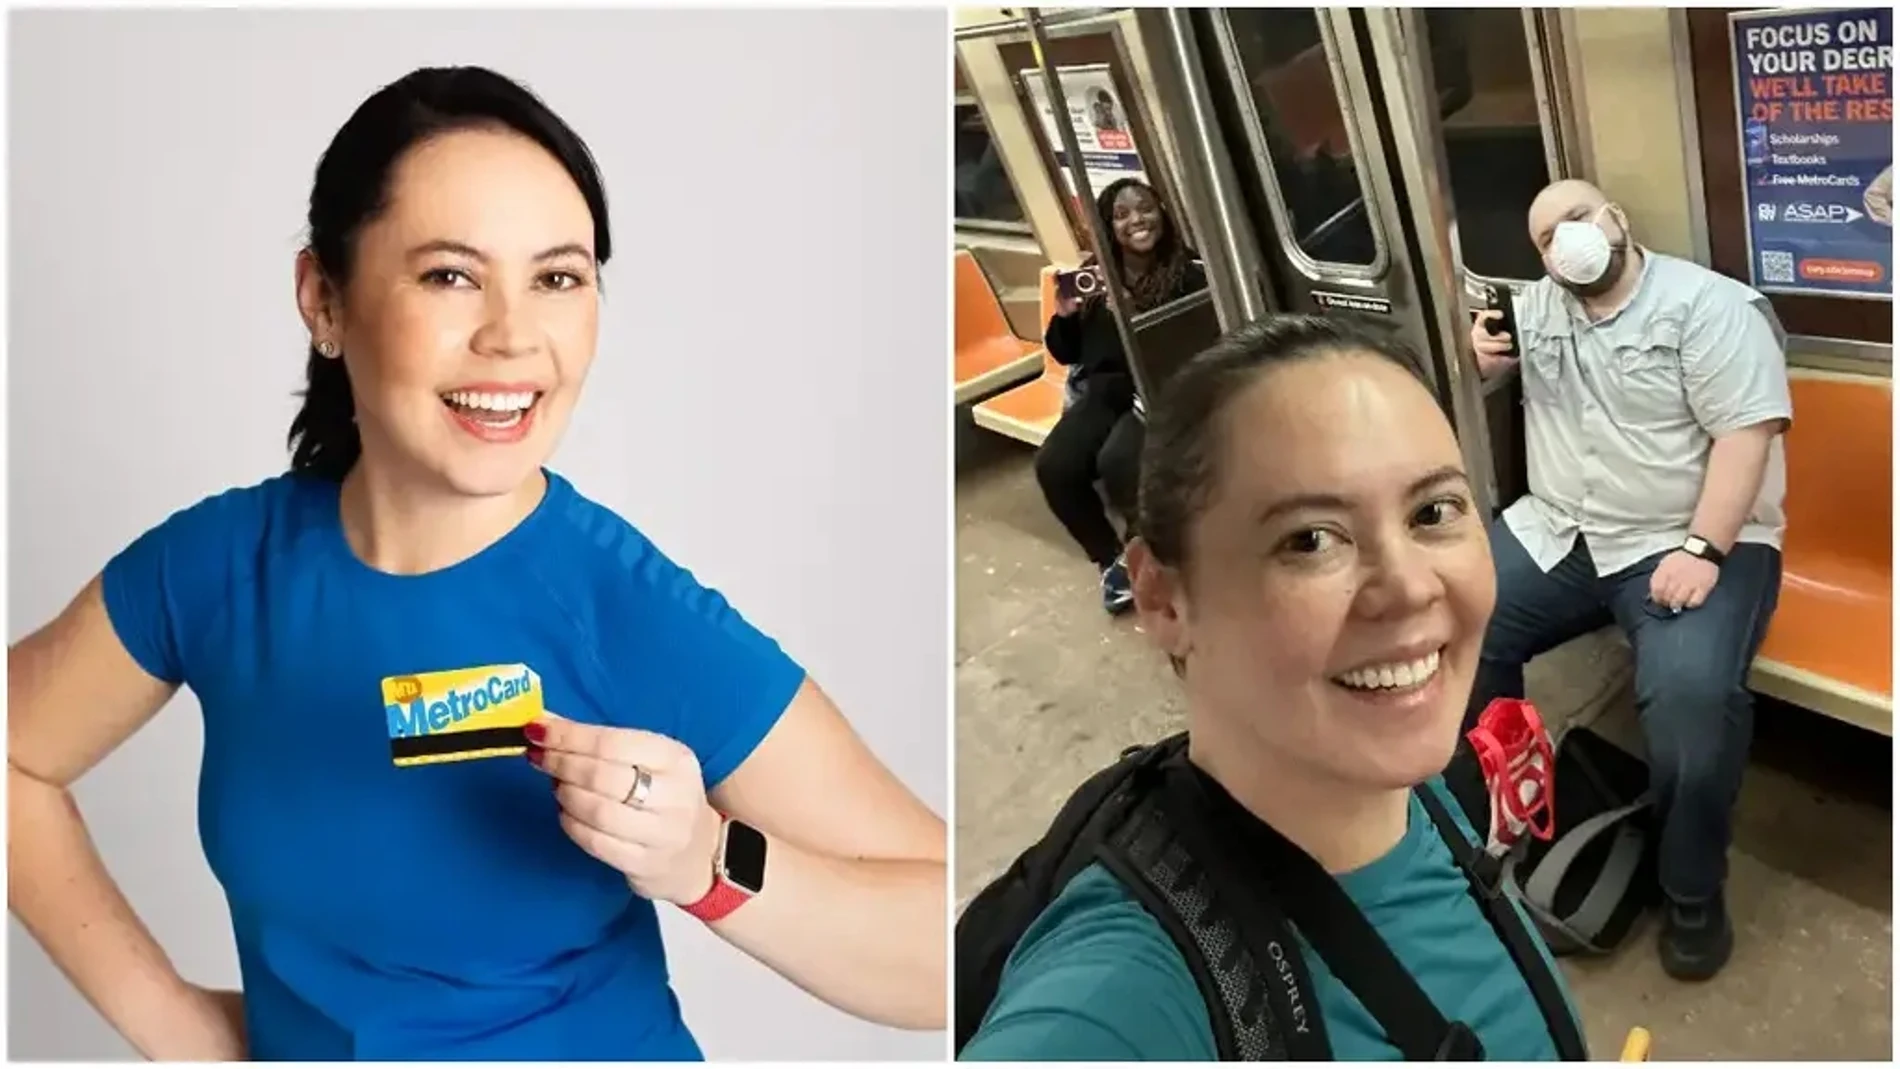 Kate Jones el 17 de abril de 2023 rompió el récord del tiempo más rápido en viajar por todas las estaciones de metro de la ciudad de Nueva York en solo 22 horas, 14 minutos y 10 segundos.